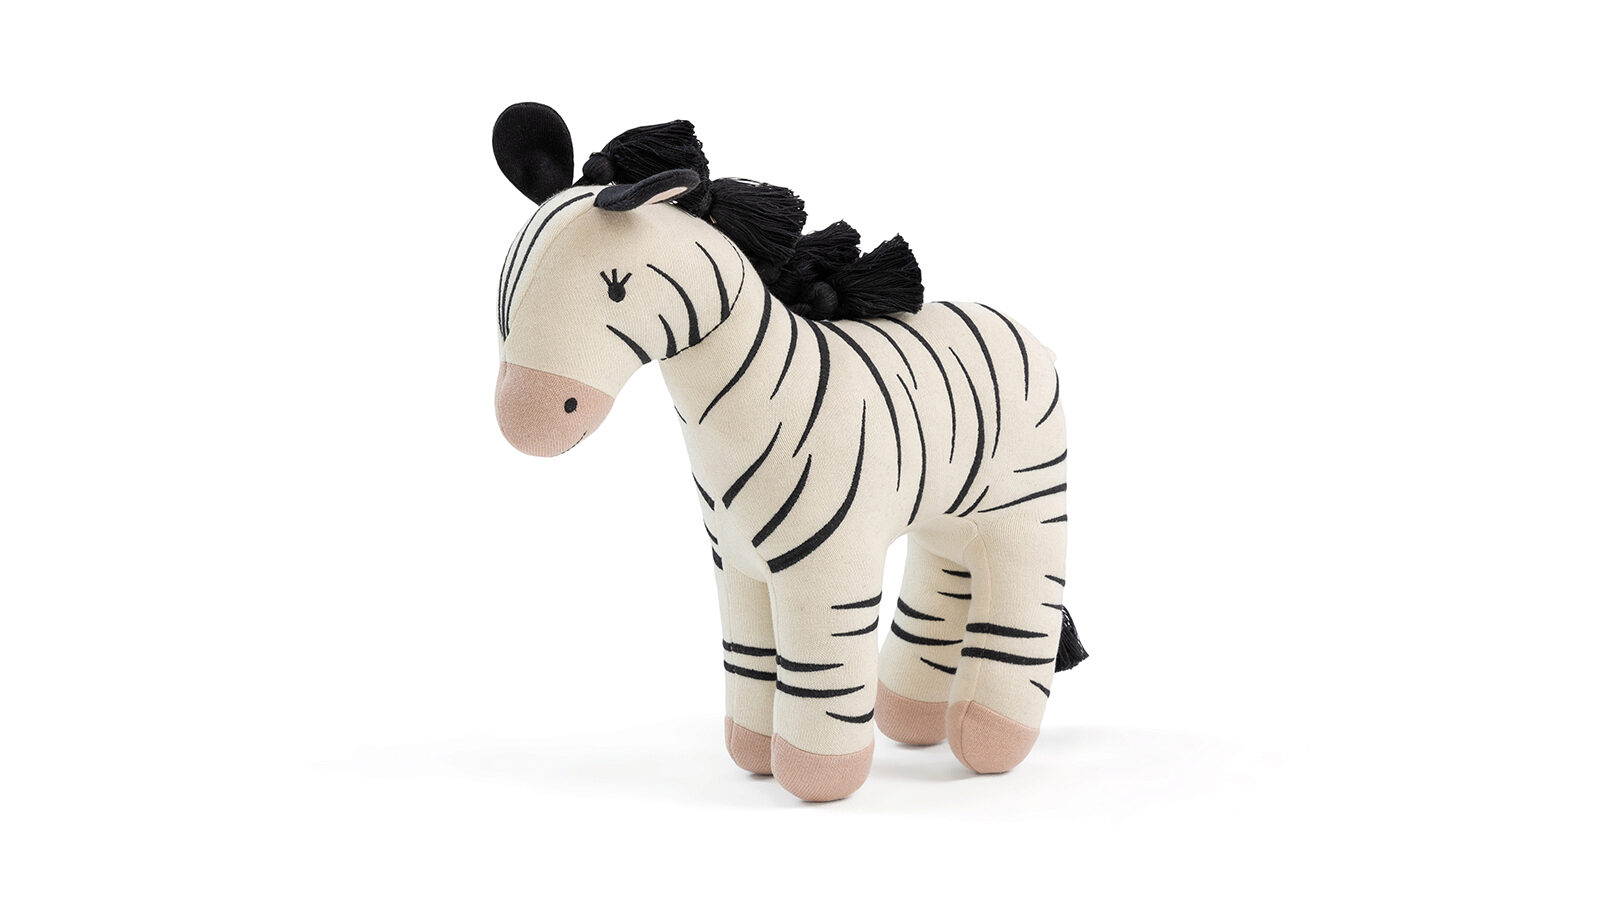 Игрушка Zebra игрушка из дерева для детей серпантинка